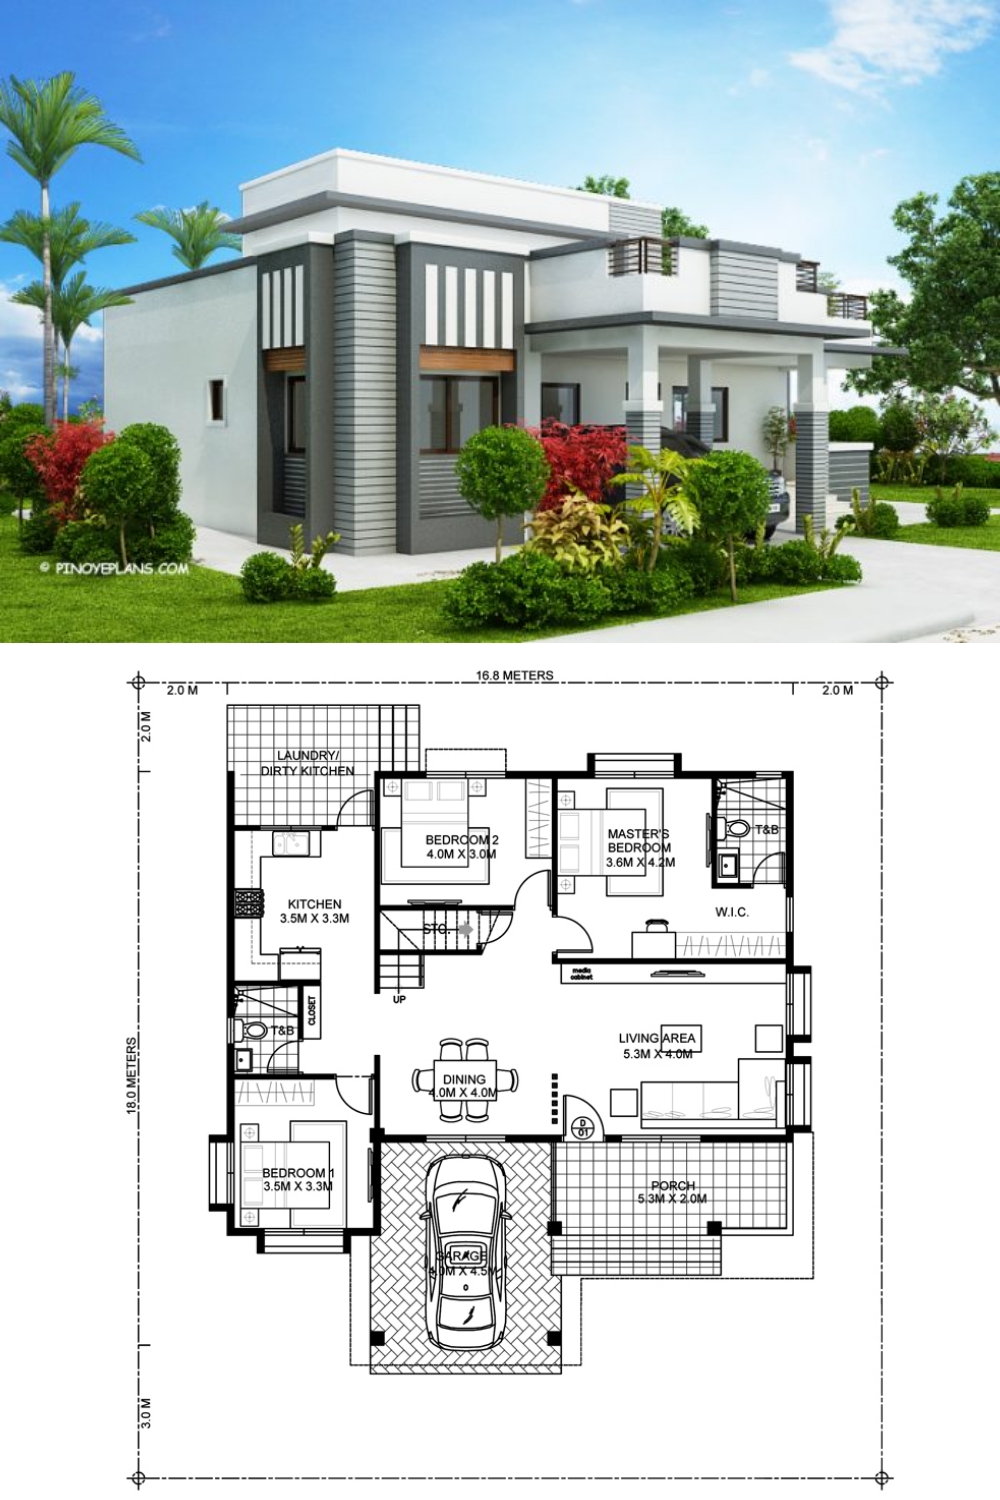 Picture of home design floor plans house decor concept ideas inside architectural design floor plans